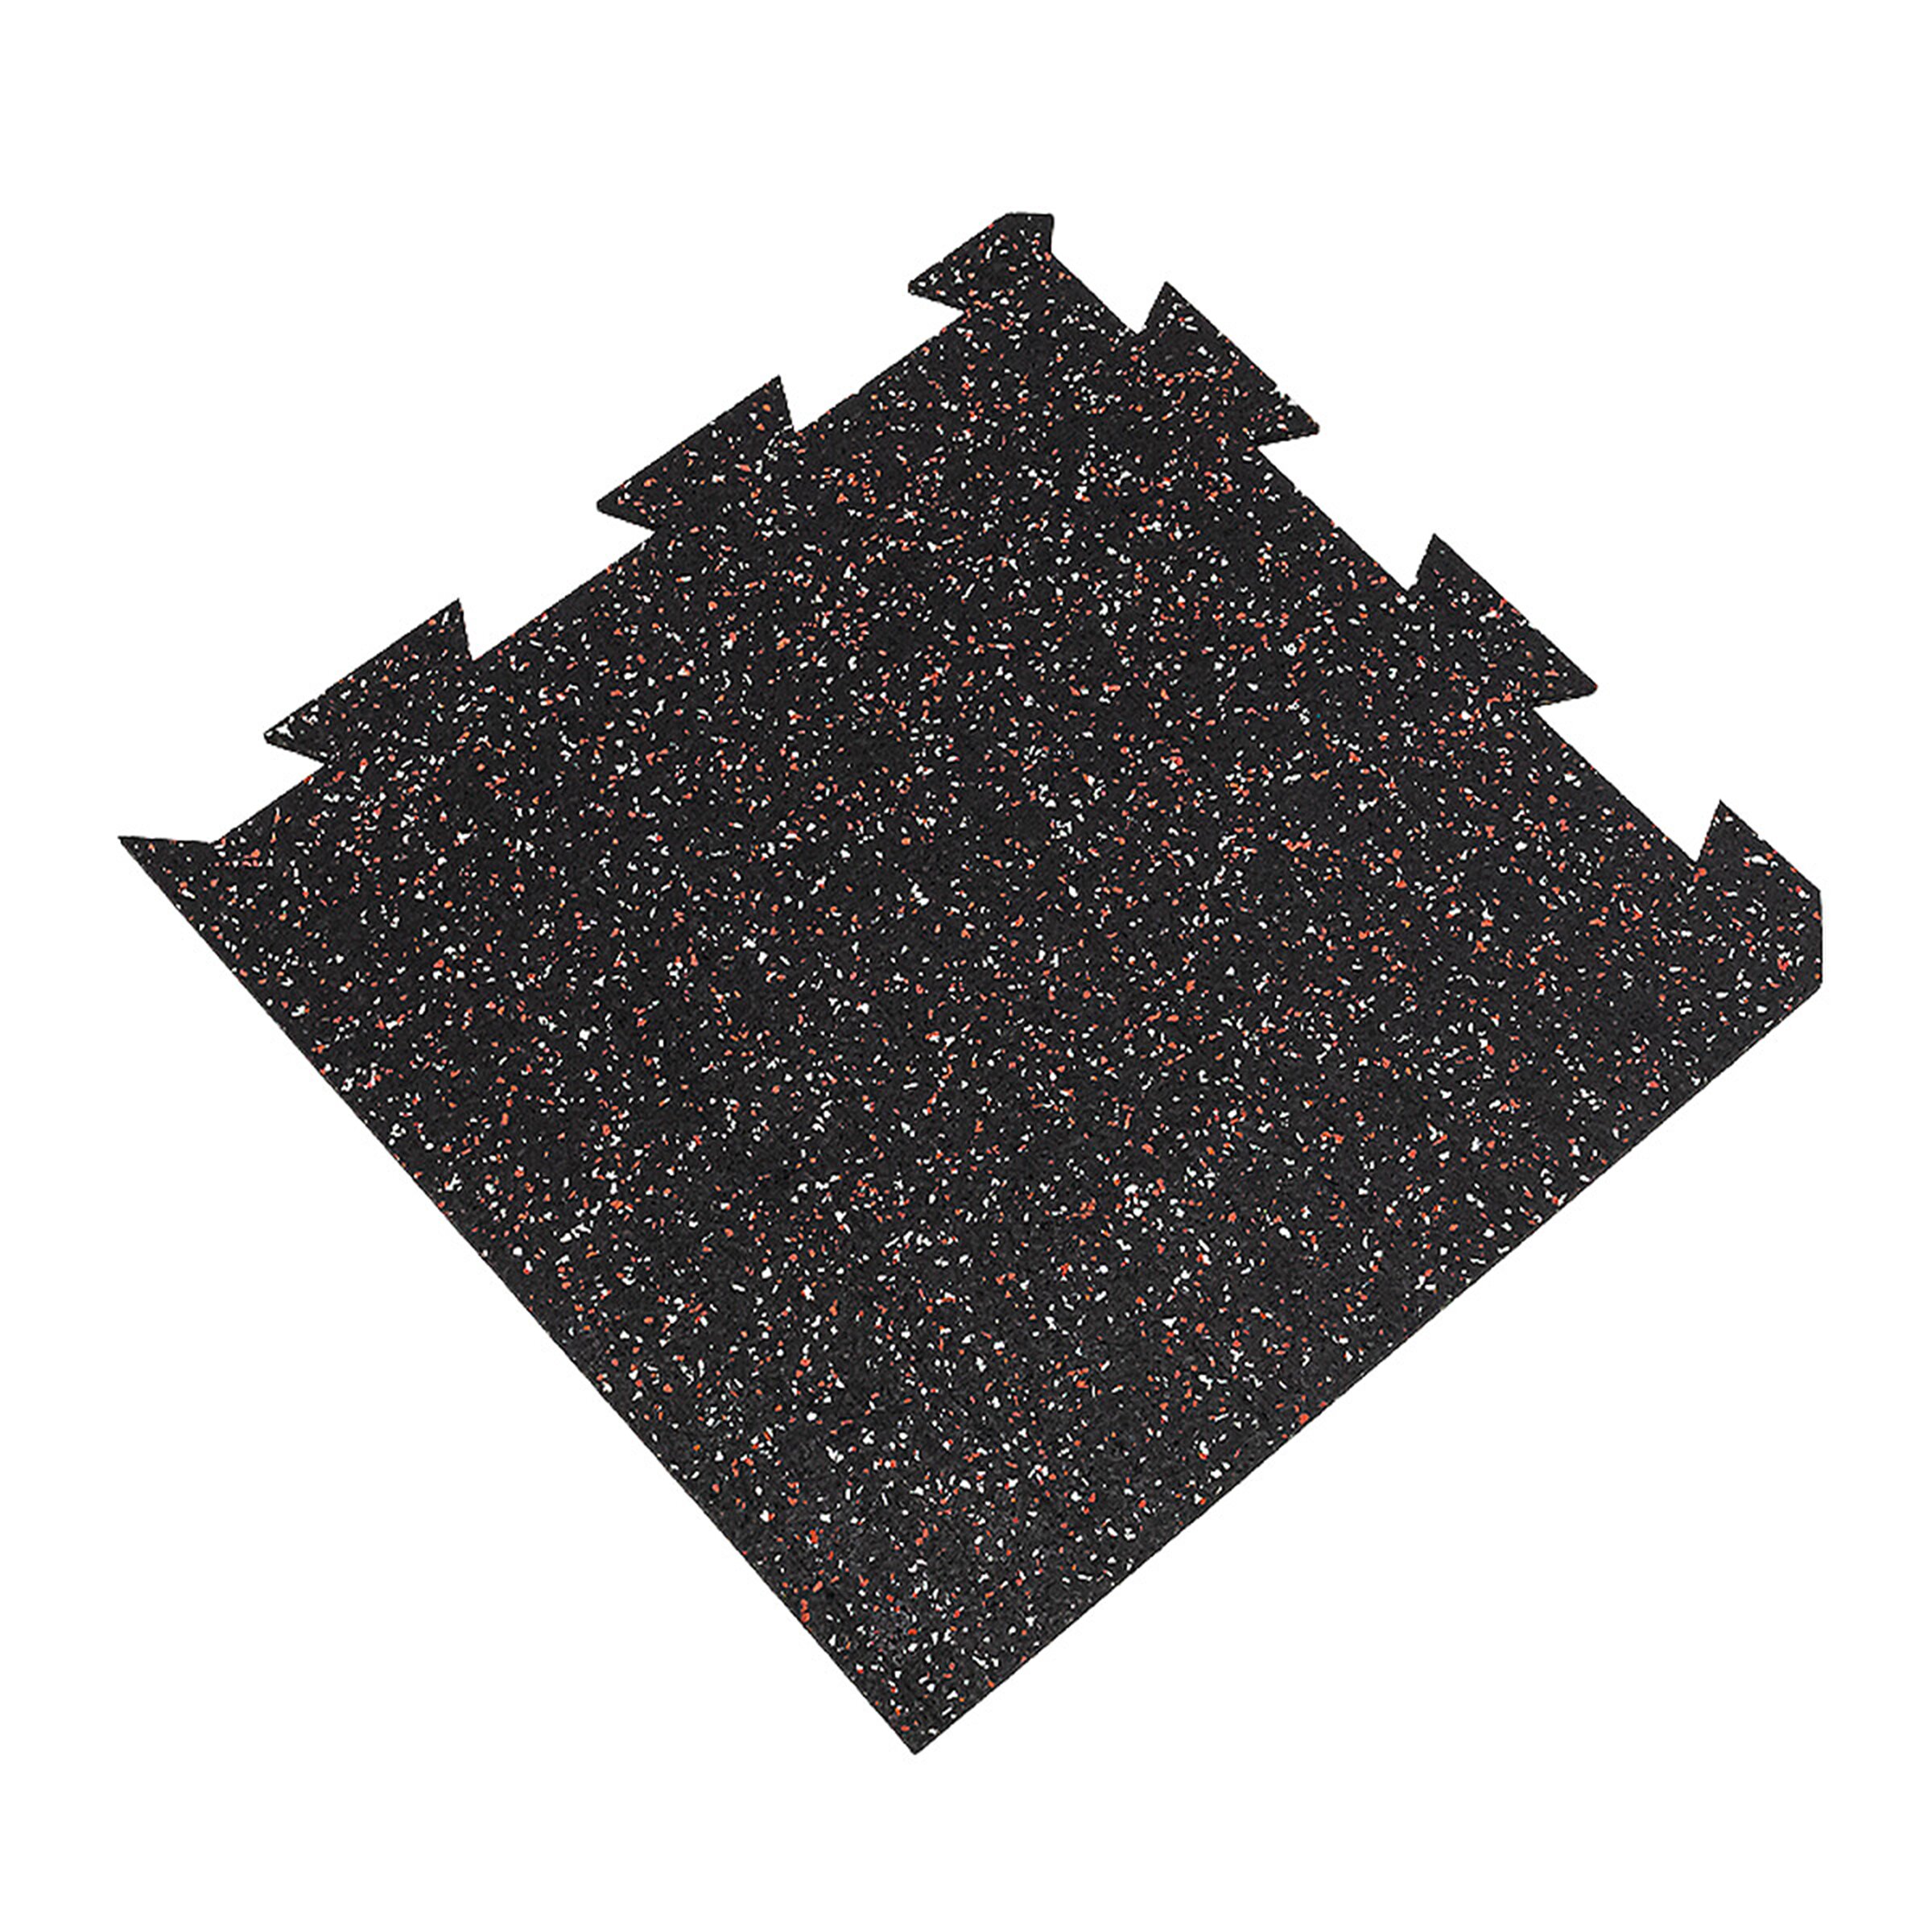 Černo-bílo-červená gumová modulová puzzle dlažba FLOMA FitFlo SF1050 - délka 50 cm, šířka 50 cm, výška 1 cm